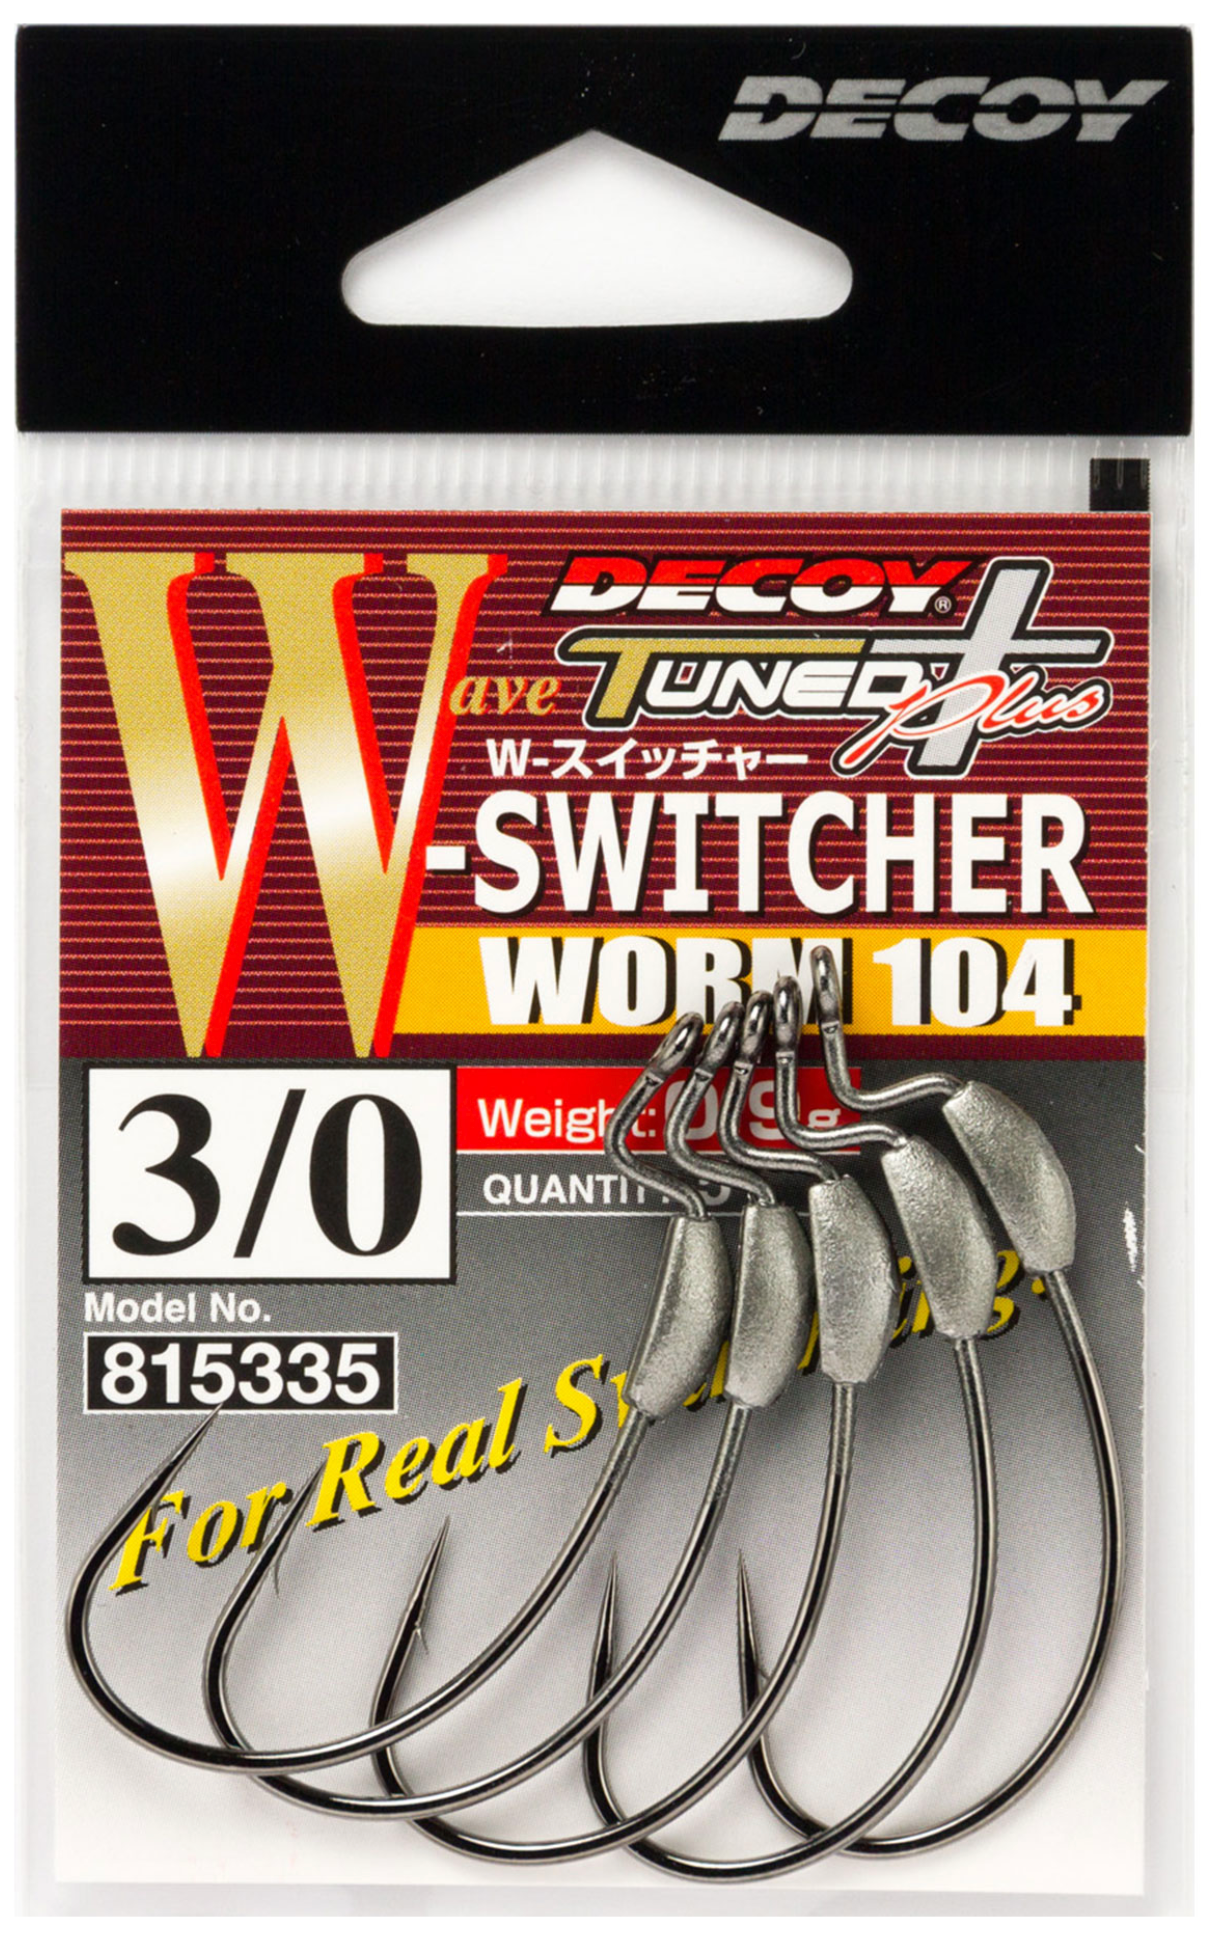 Decoy Worm 104 W-Switcher